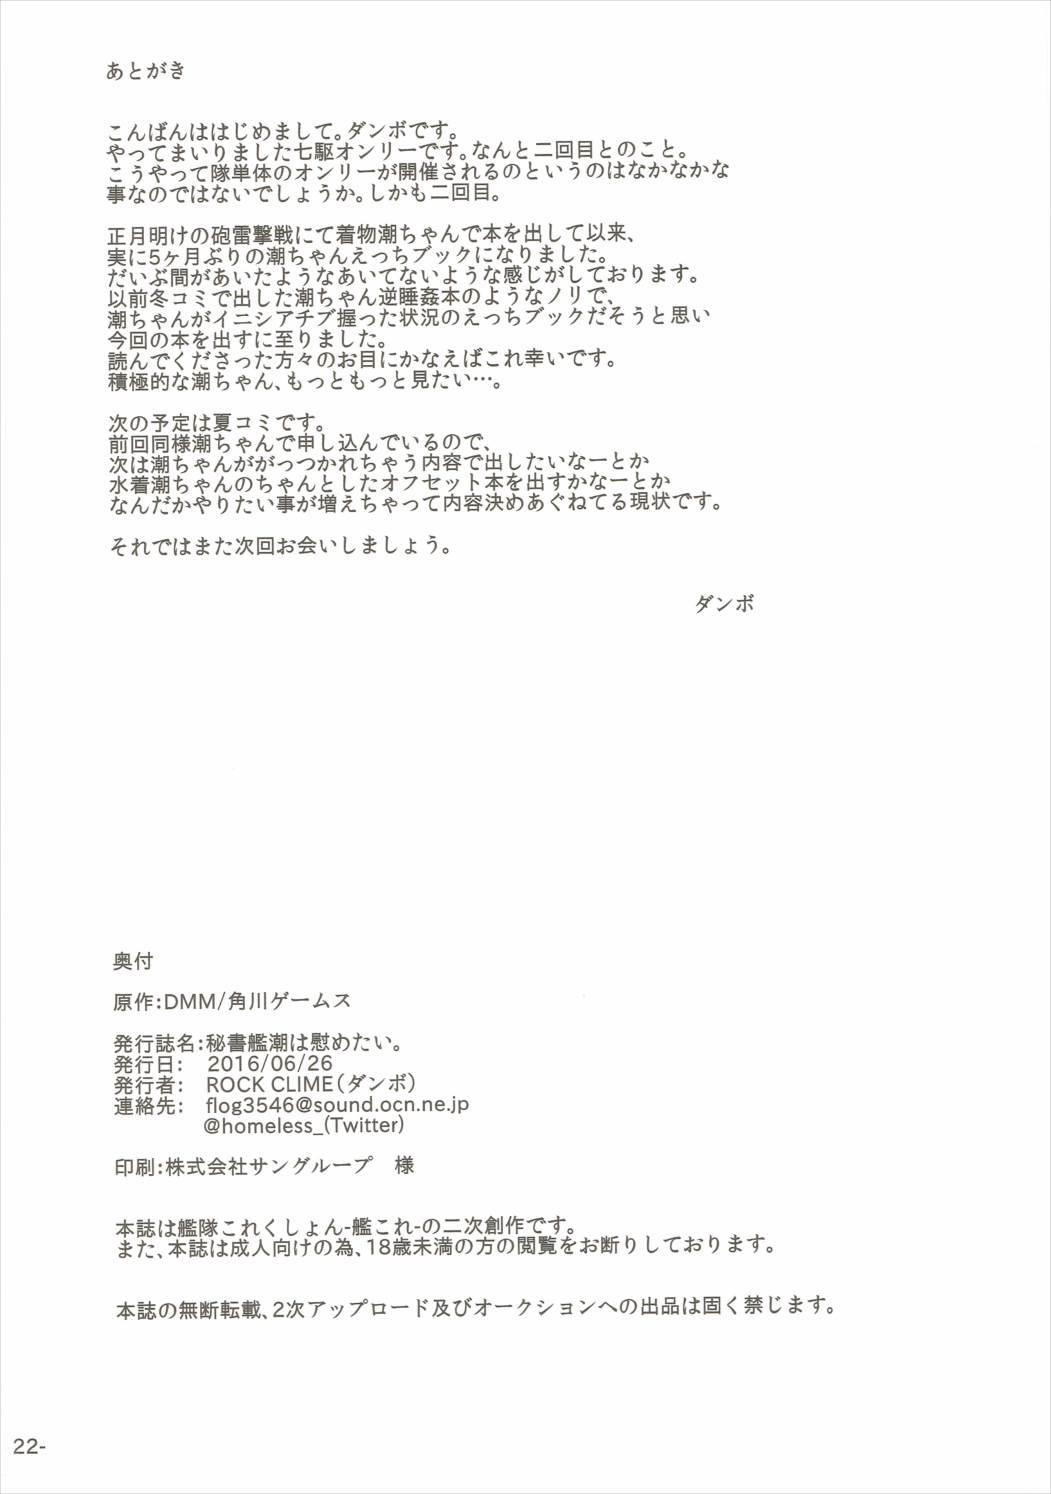 Hishokan Ushio wa Nagusametai. 20